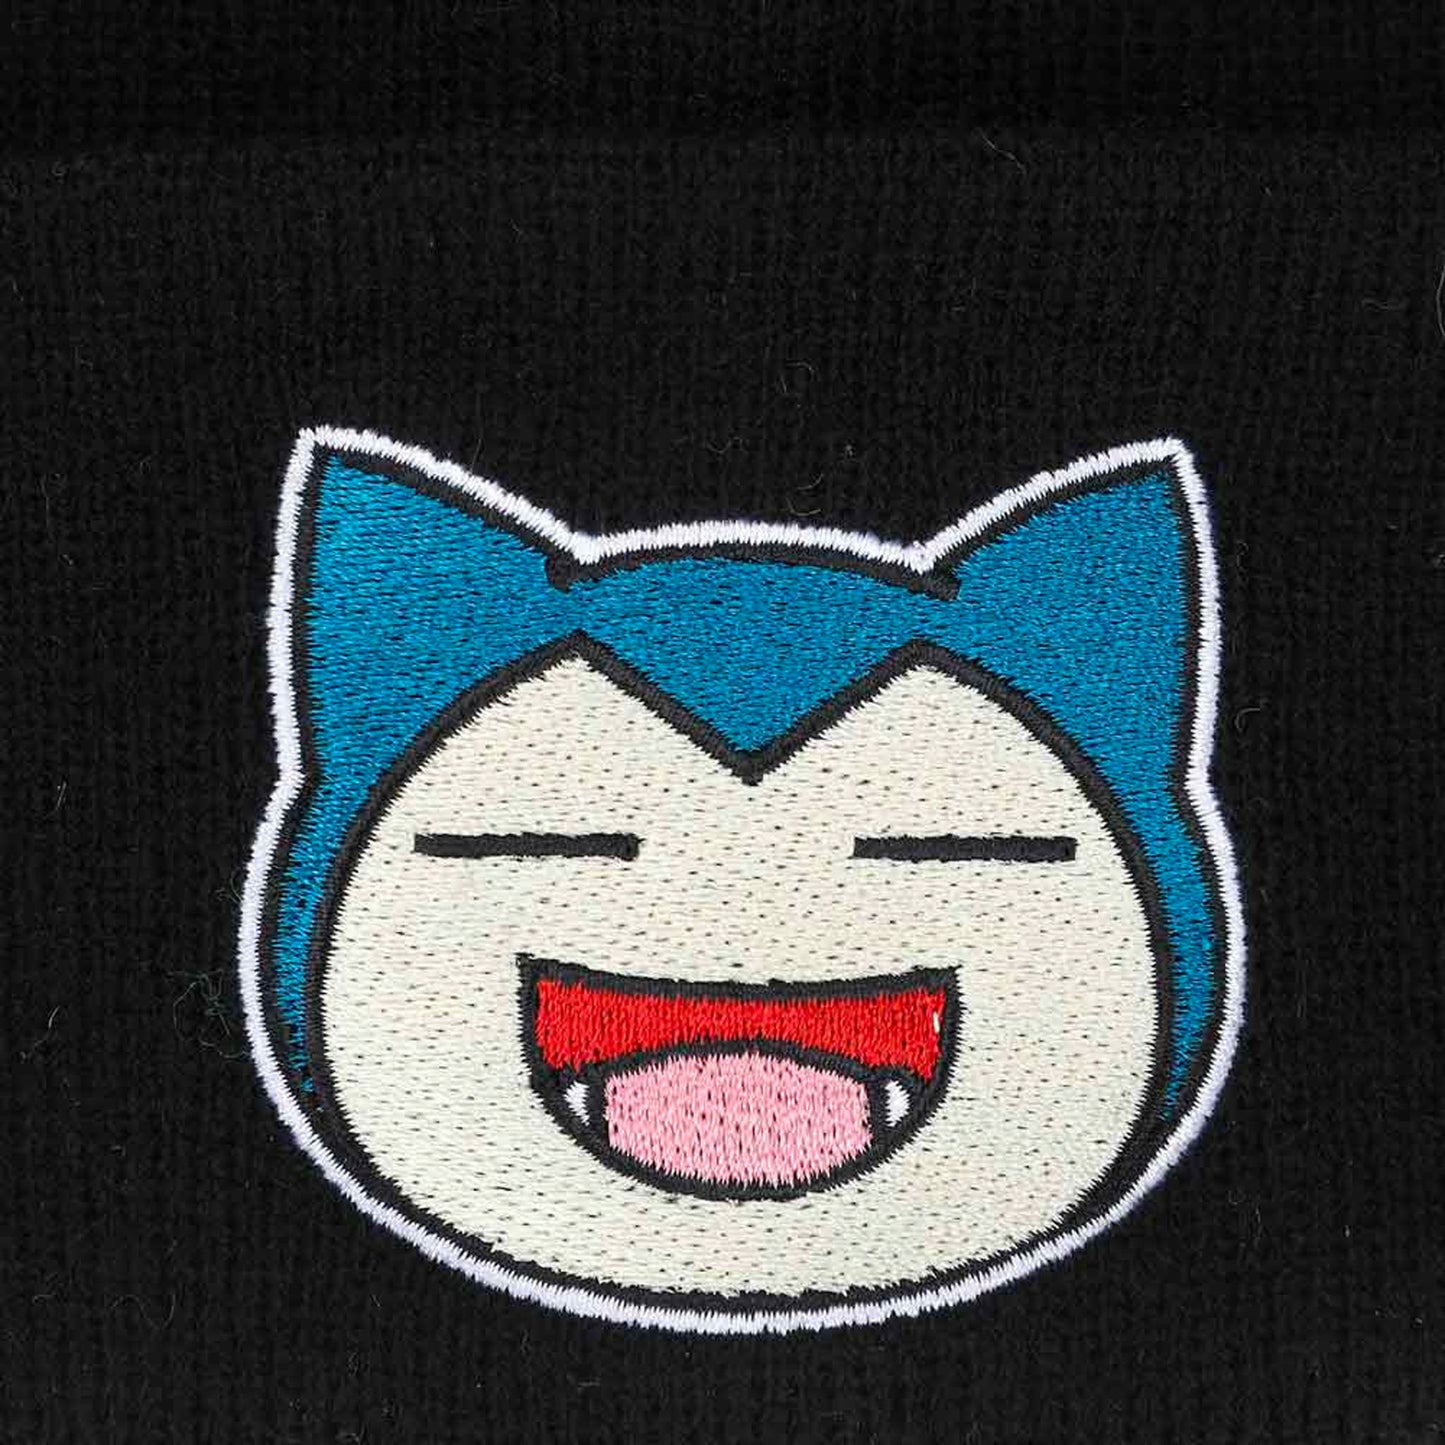 Snorlax (Pokemon) Embroidered Cuff Beanie Hat